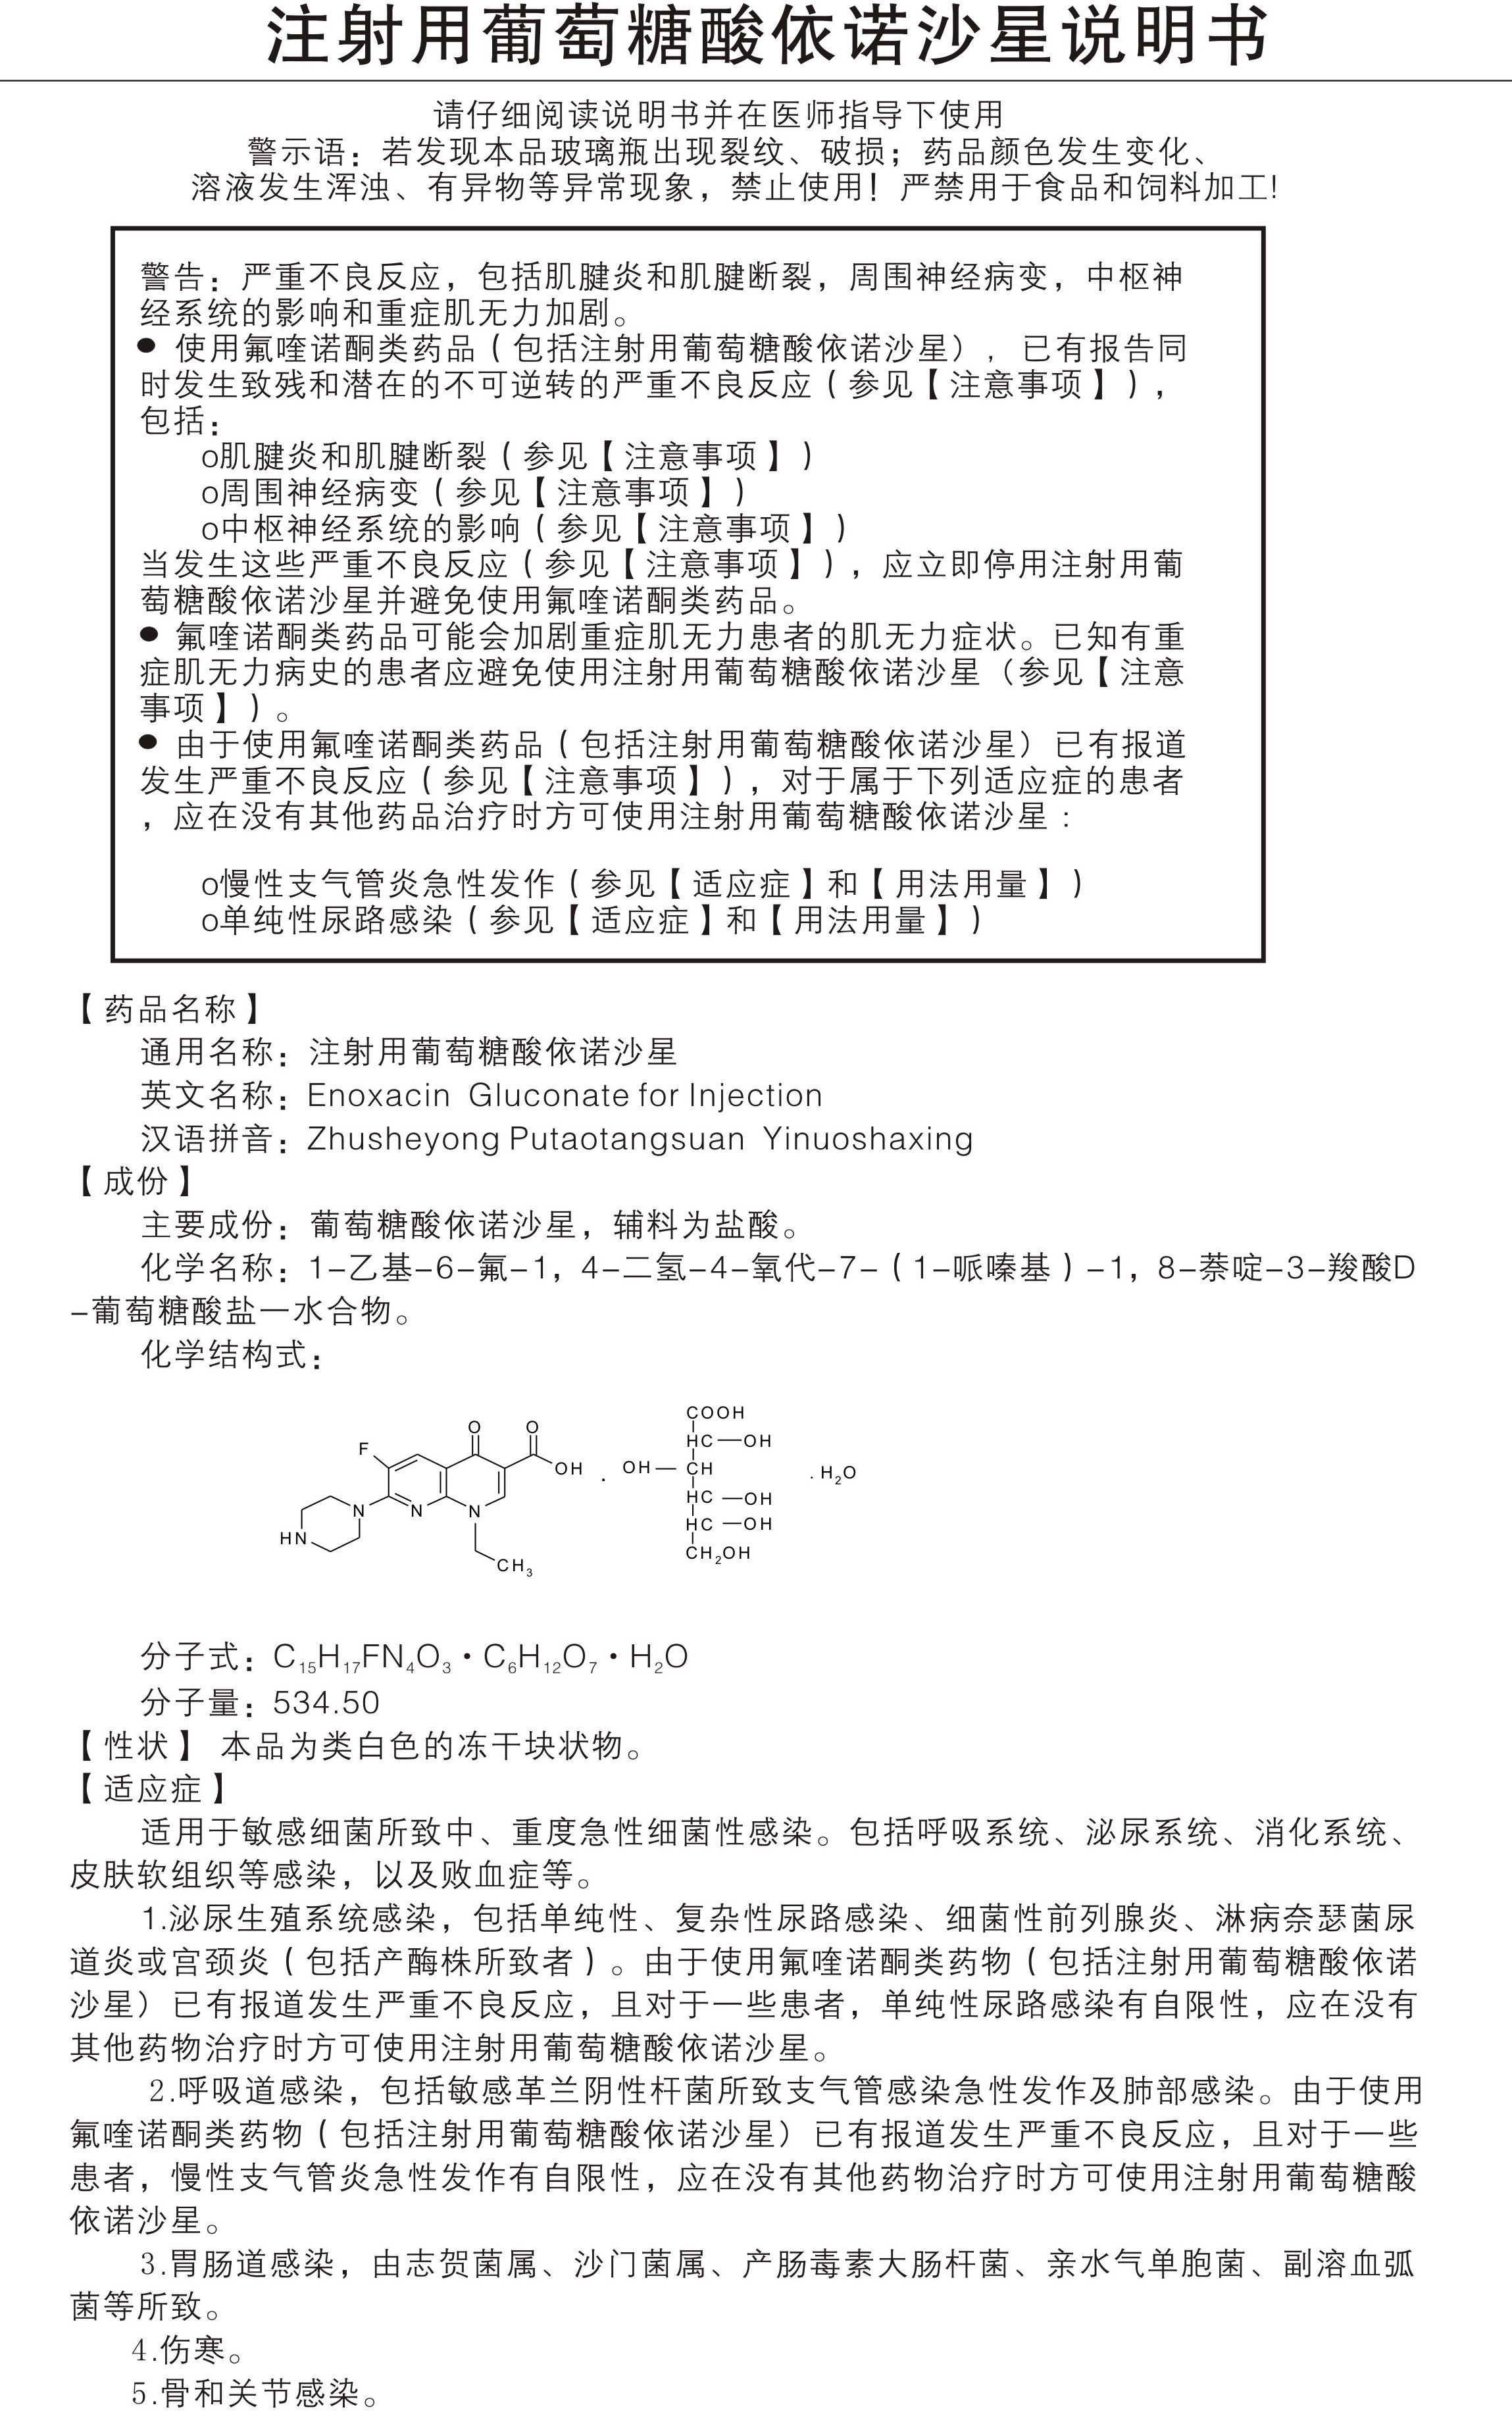 注射用葡萄糖酸依诺沙星0.1g说明书_副本.jpg